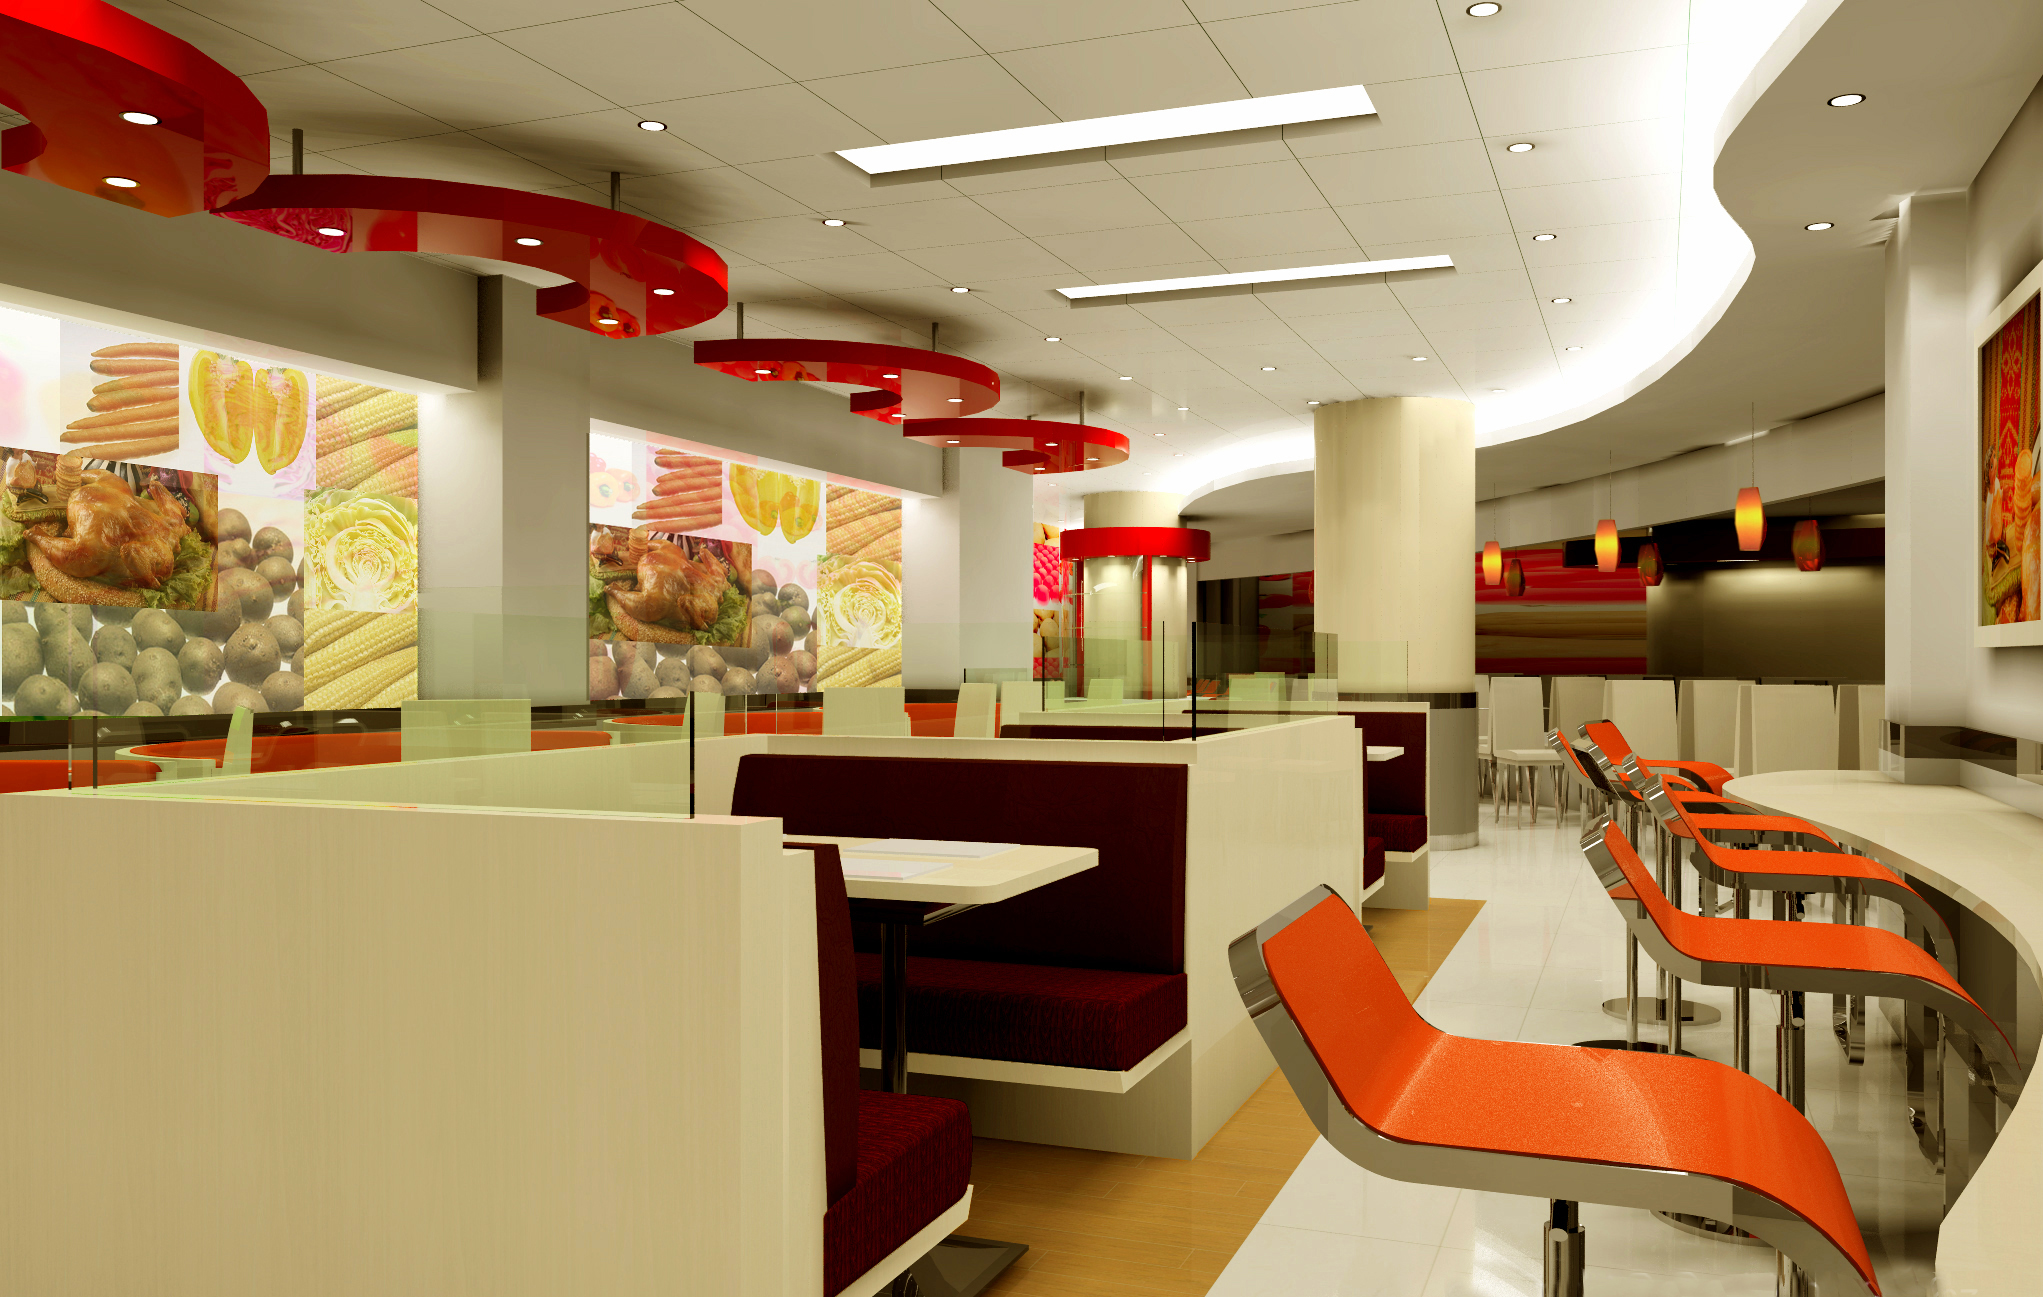 KFC设计丨成都餐厅装修设计丨餐厅装修设计贴壁纸要有整体意识 